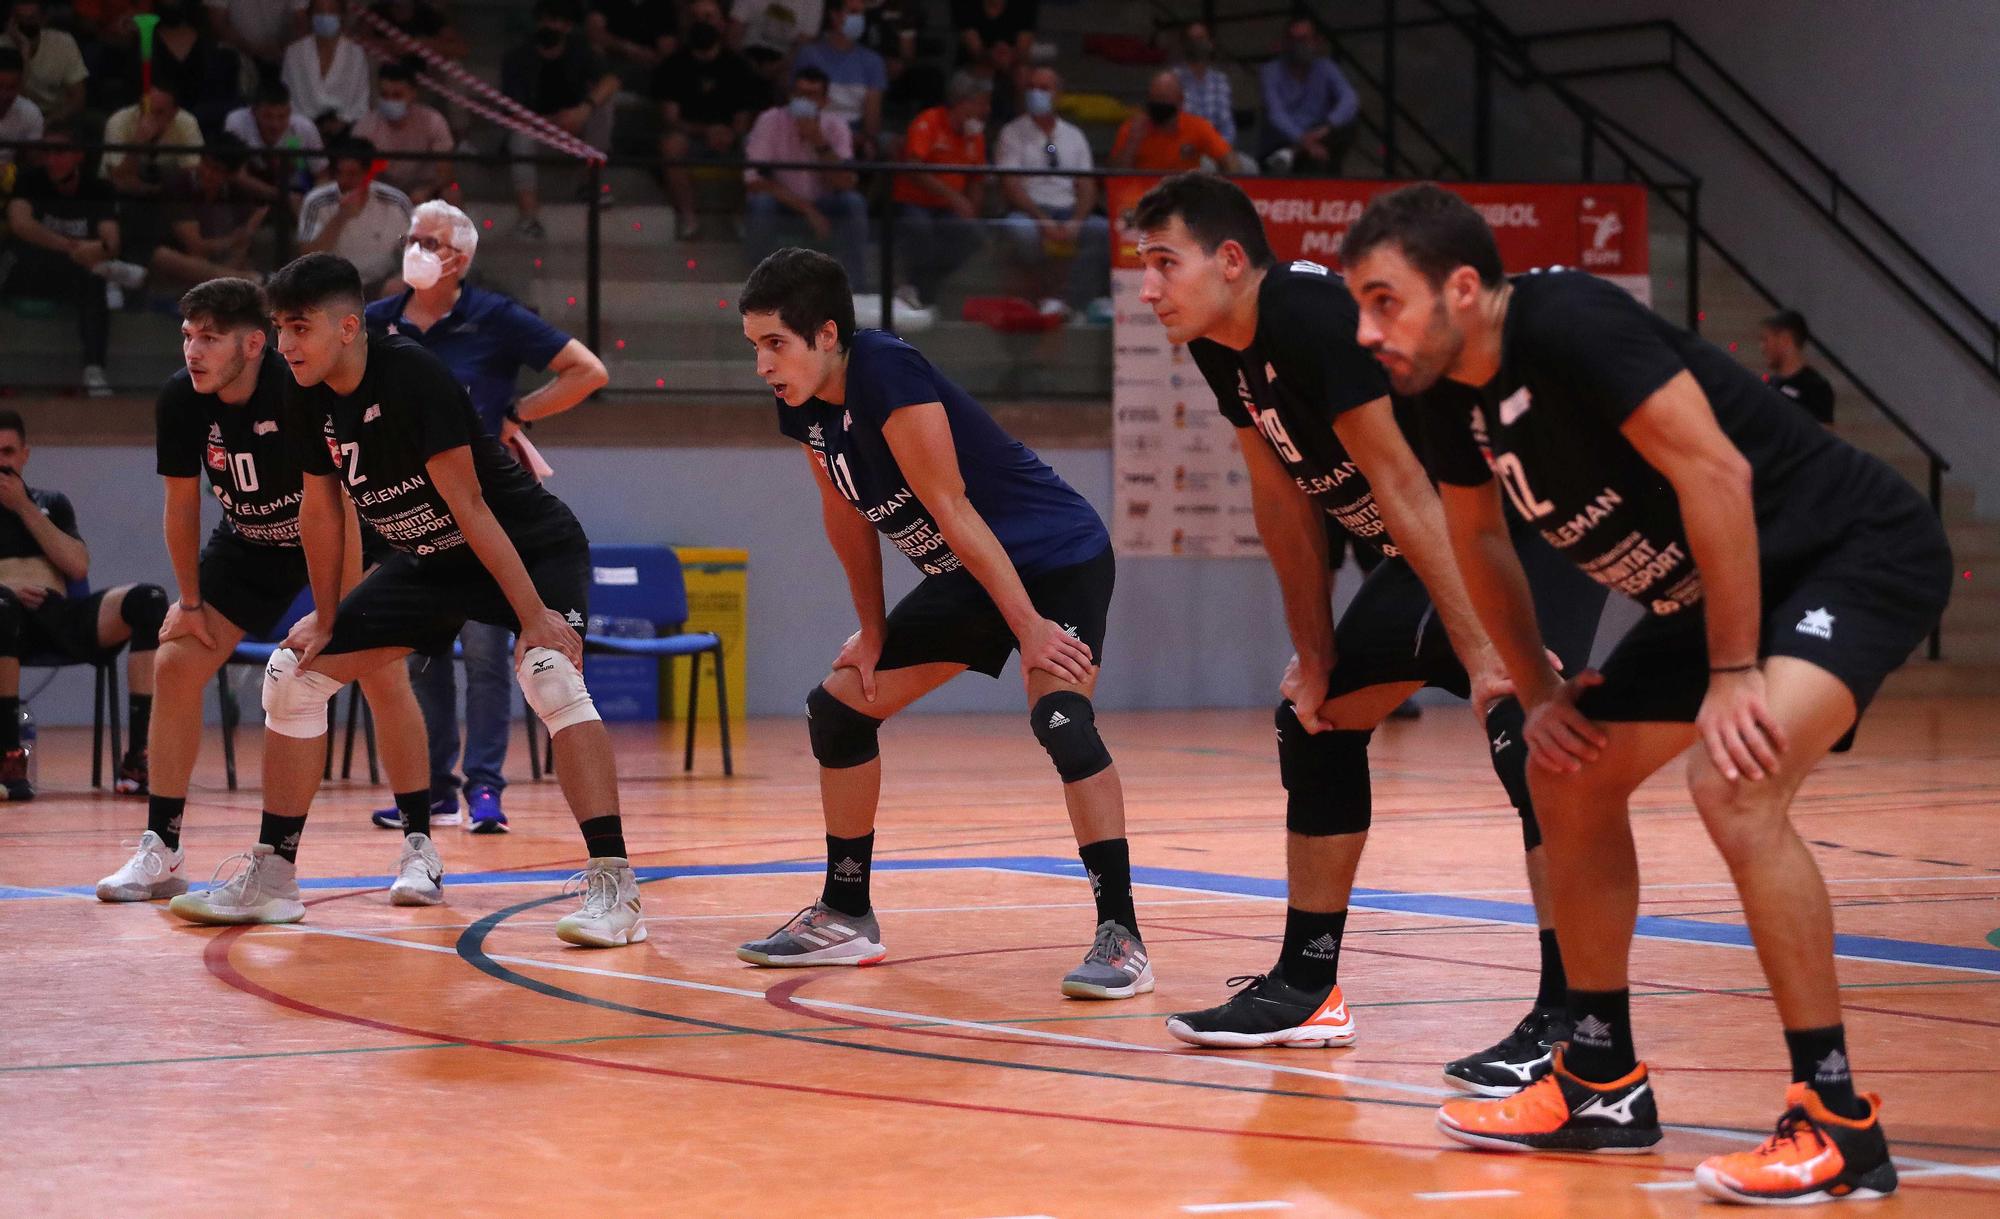 Partido de Voleibol entre Leleman Valencia Voleibol y el Teruel voleibol